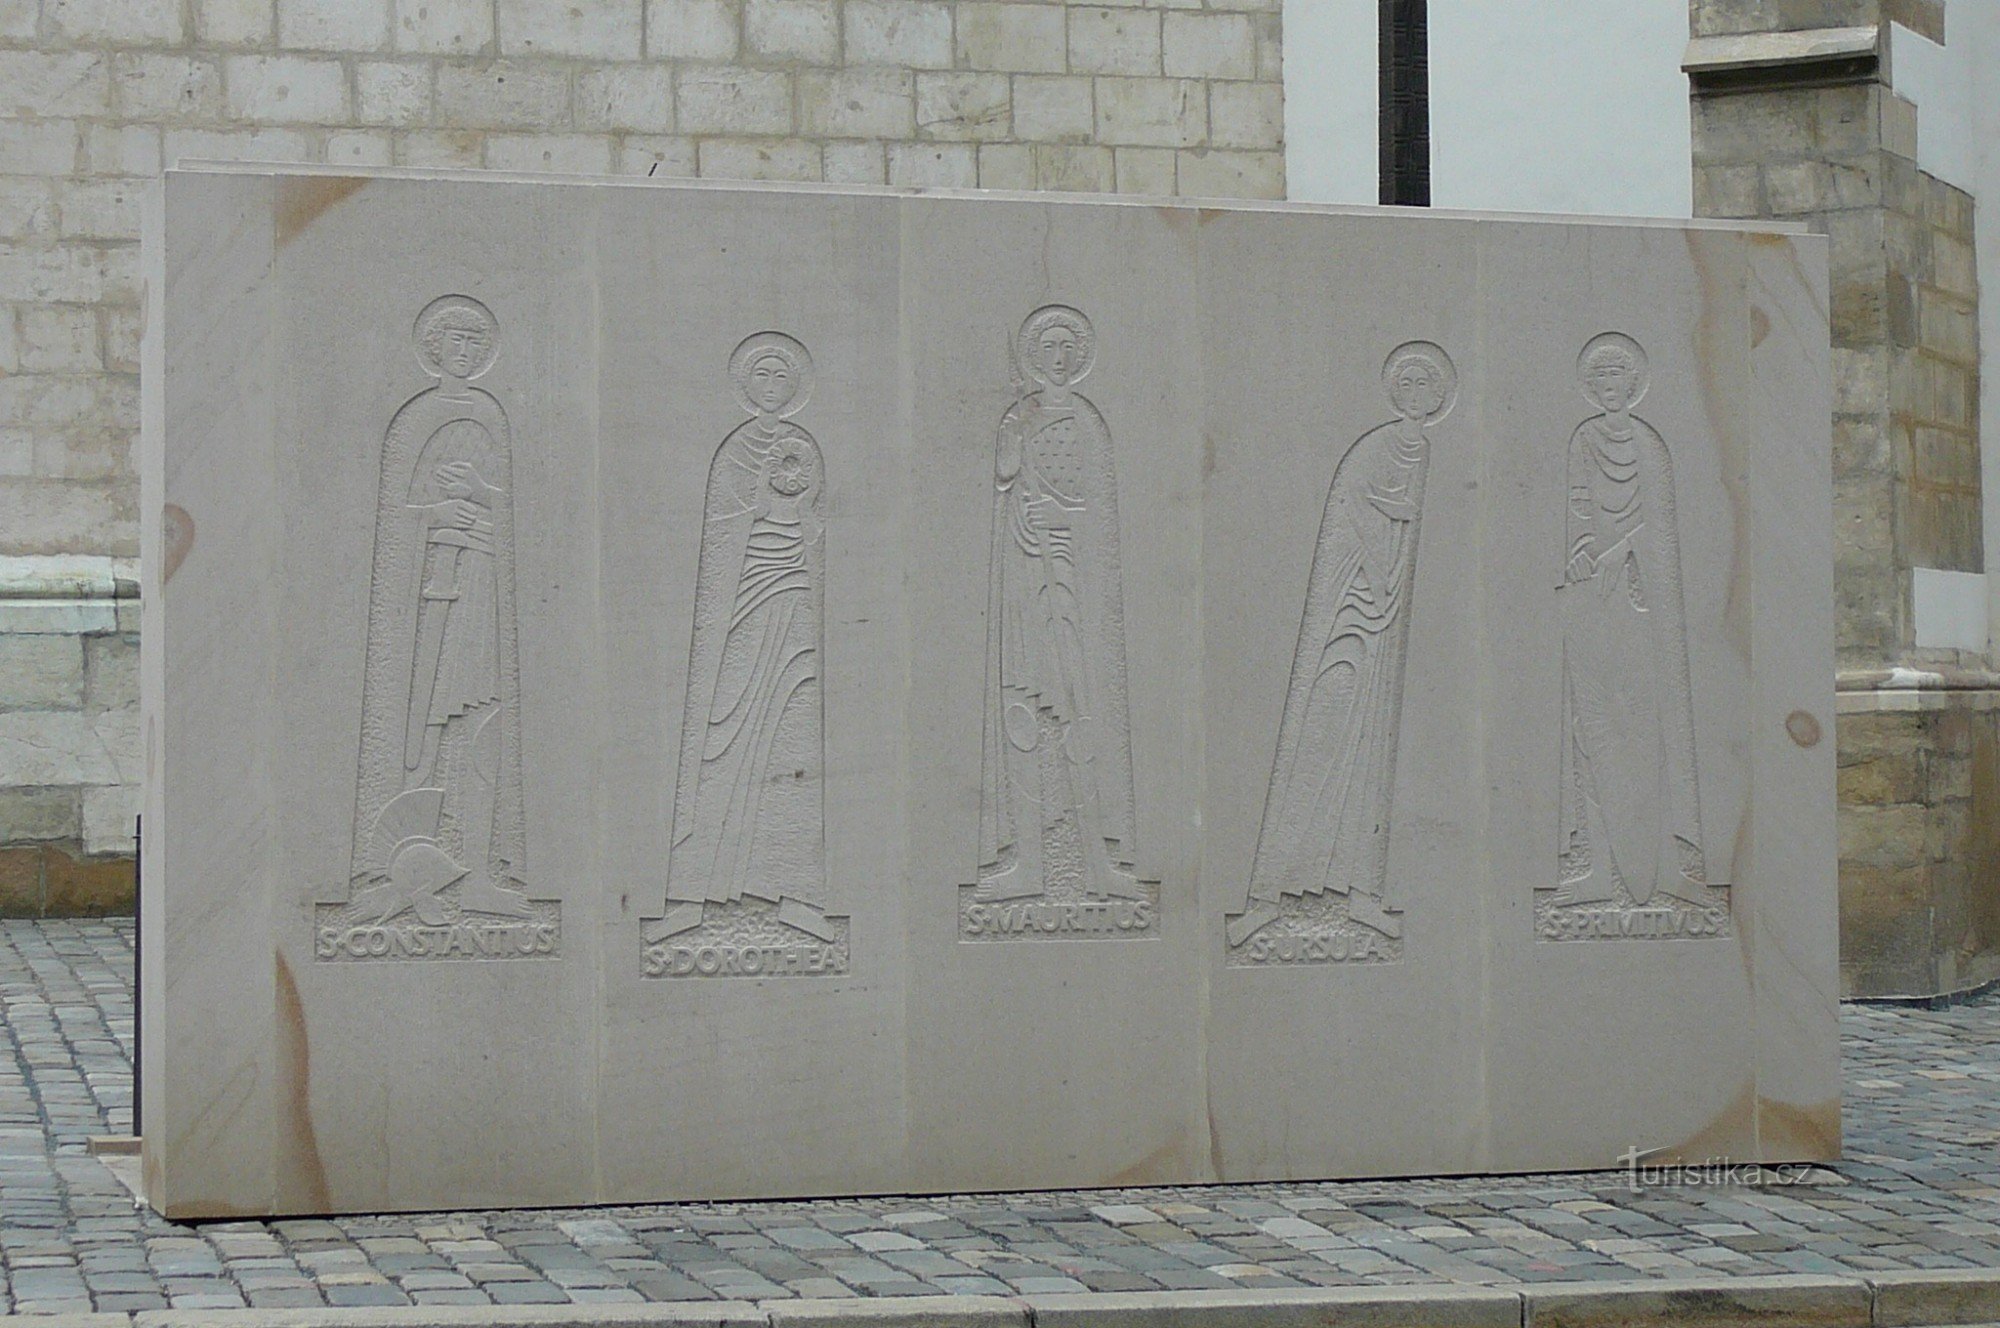 La parte trasera del muro de entrada con la representación de los cinco santos que tienen una conexión con el hueso.